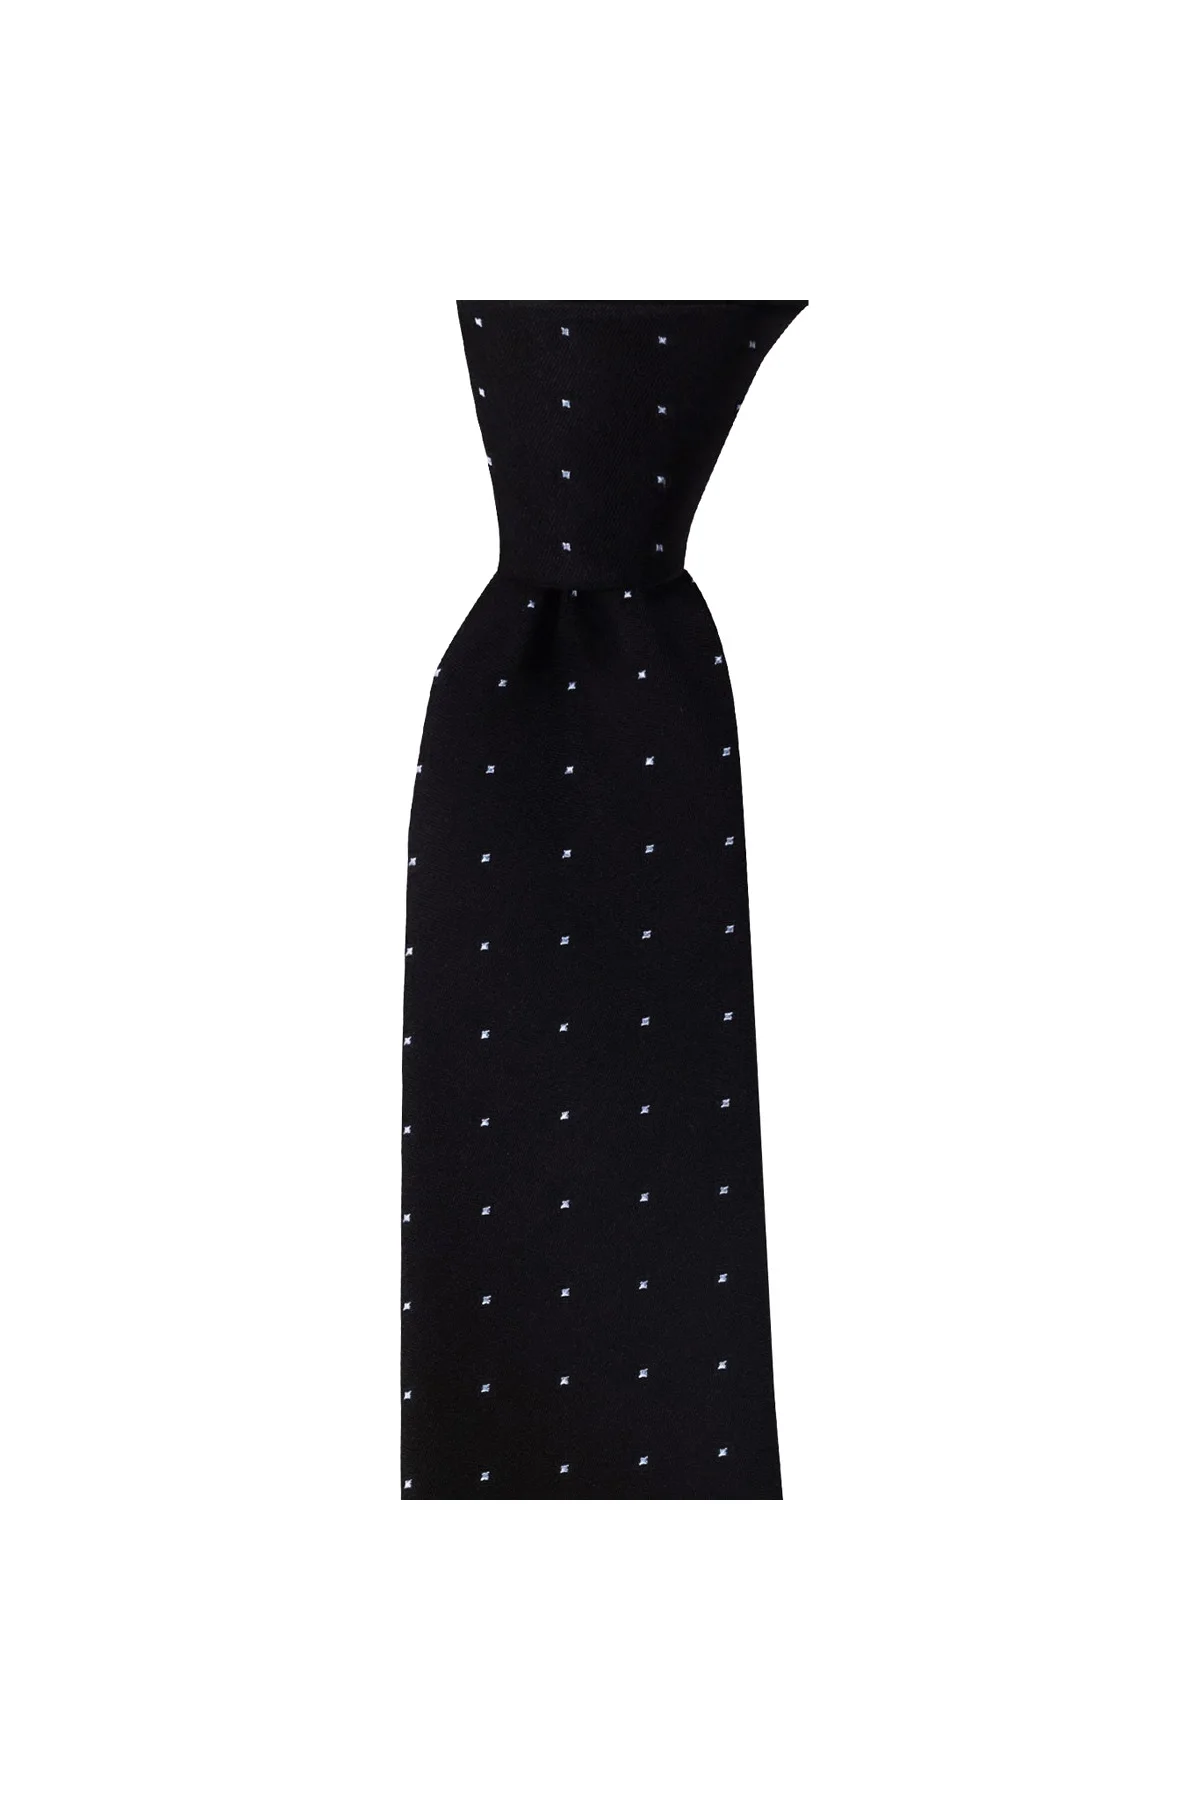 Мужской Шелковый галстук классического дизайна, Сделано в Италии, Ширина 7,5 см, длина 145 см, отличный наряд с классическими мужскими костюмам...